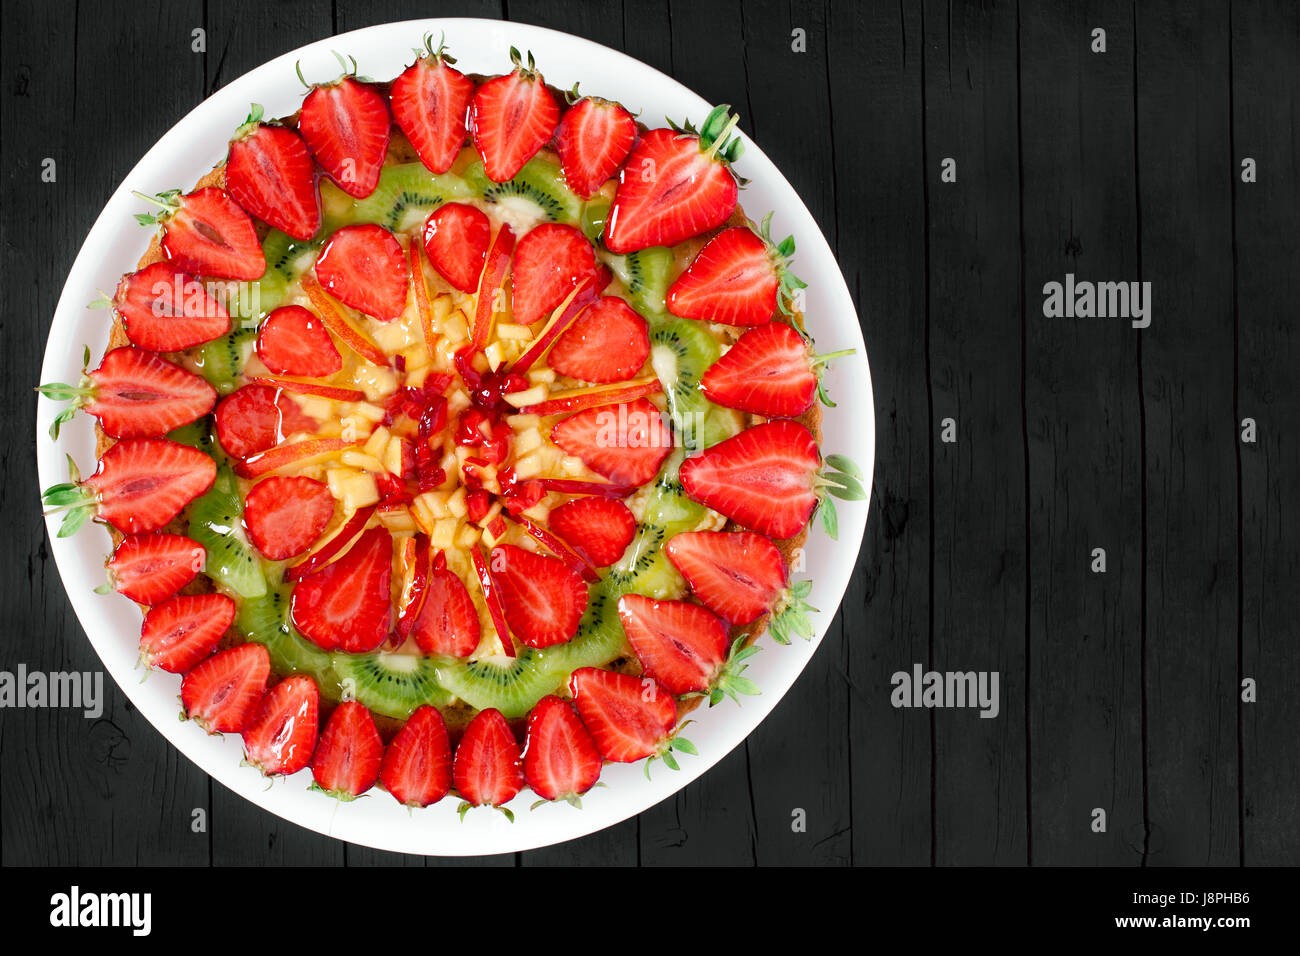 Frisches Obst-Torte mit Erdbeeren, Pfirsiche und Kiwi, auf schwarzem Holz Hintergrund, Ansicht von oben geschossen mit textfreiraum verziert. Stockfoto